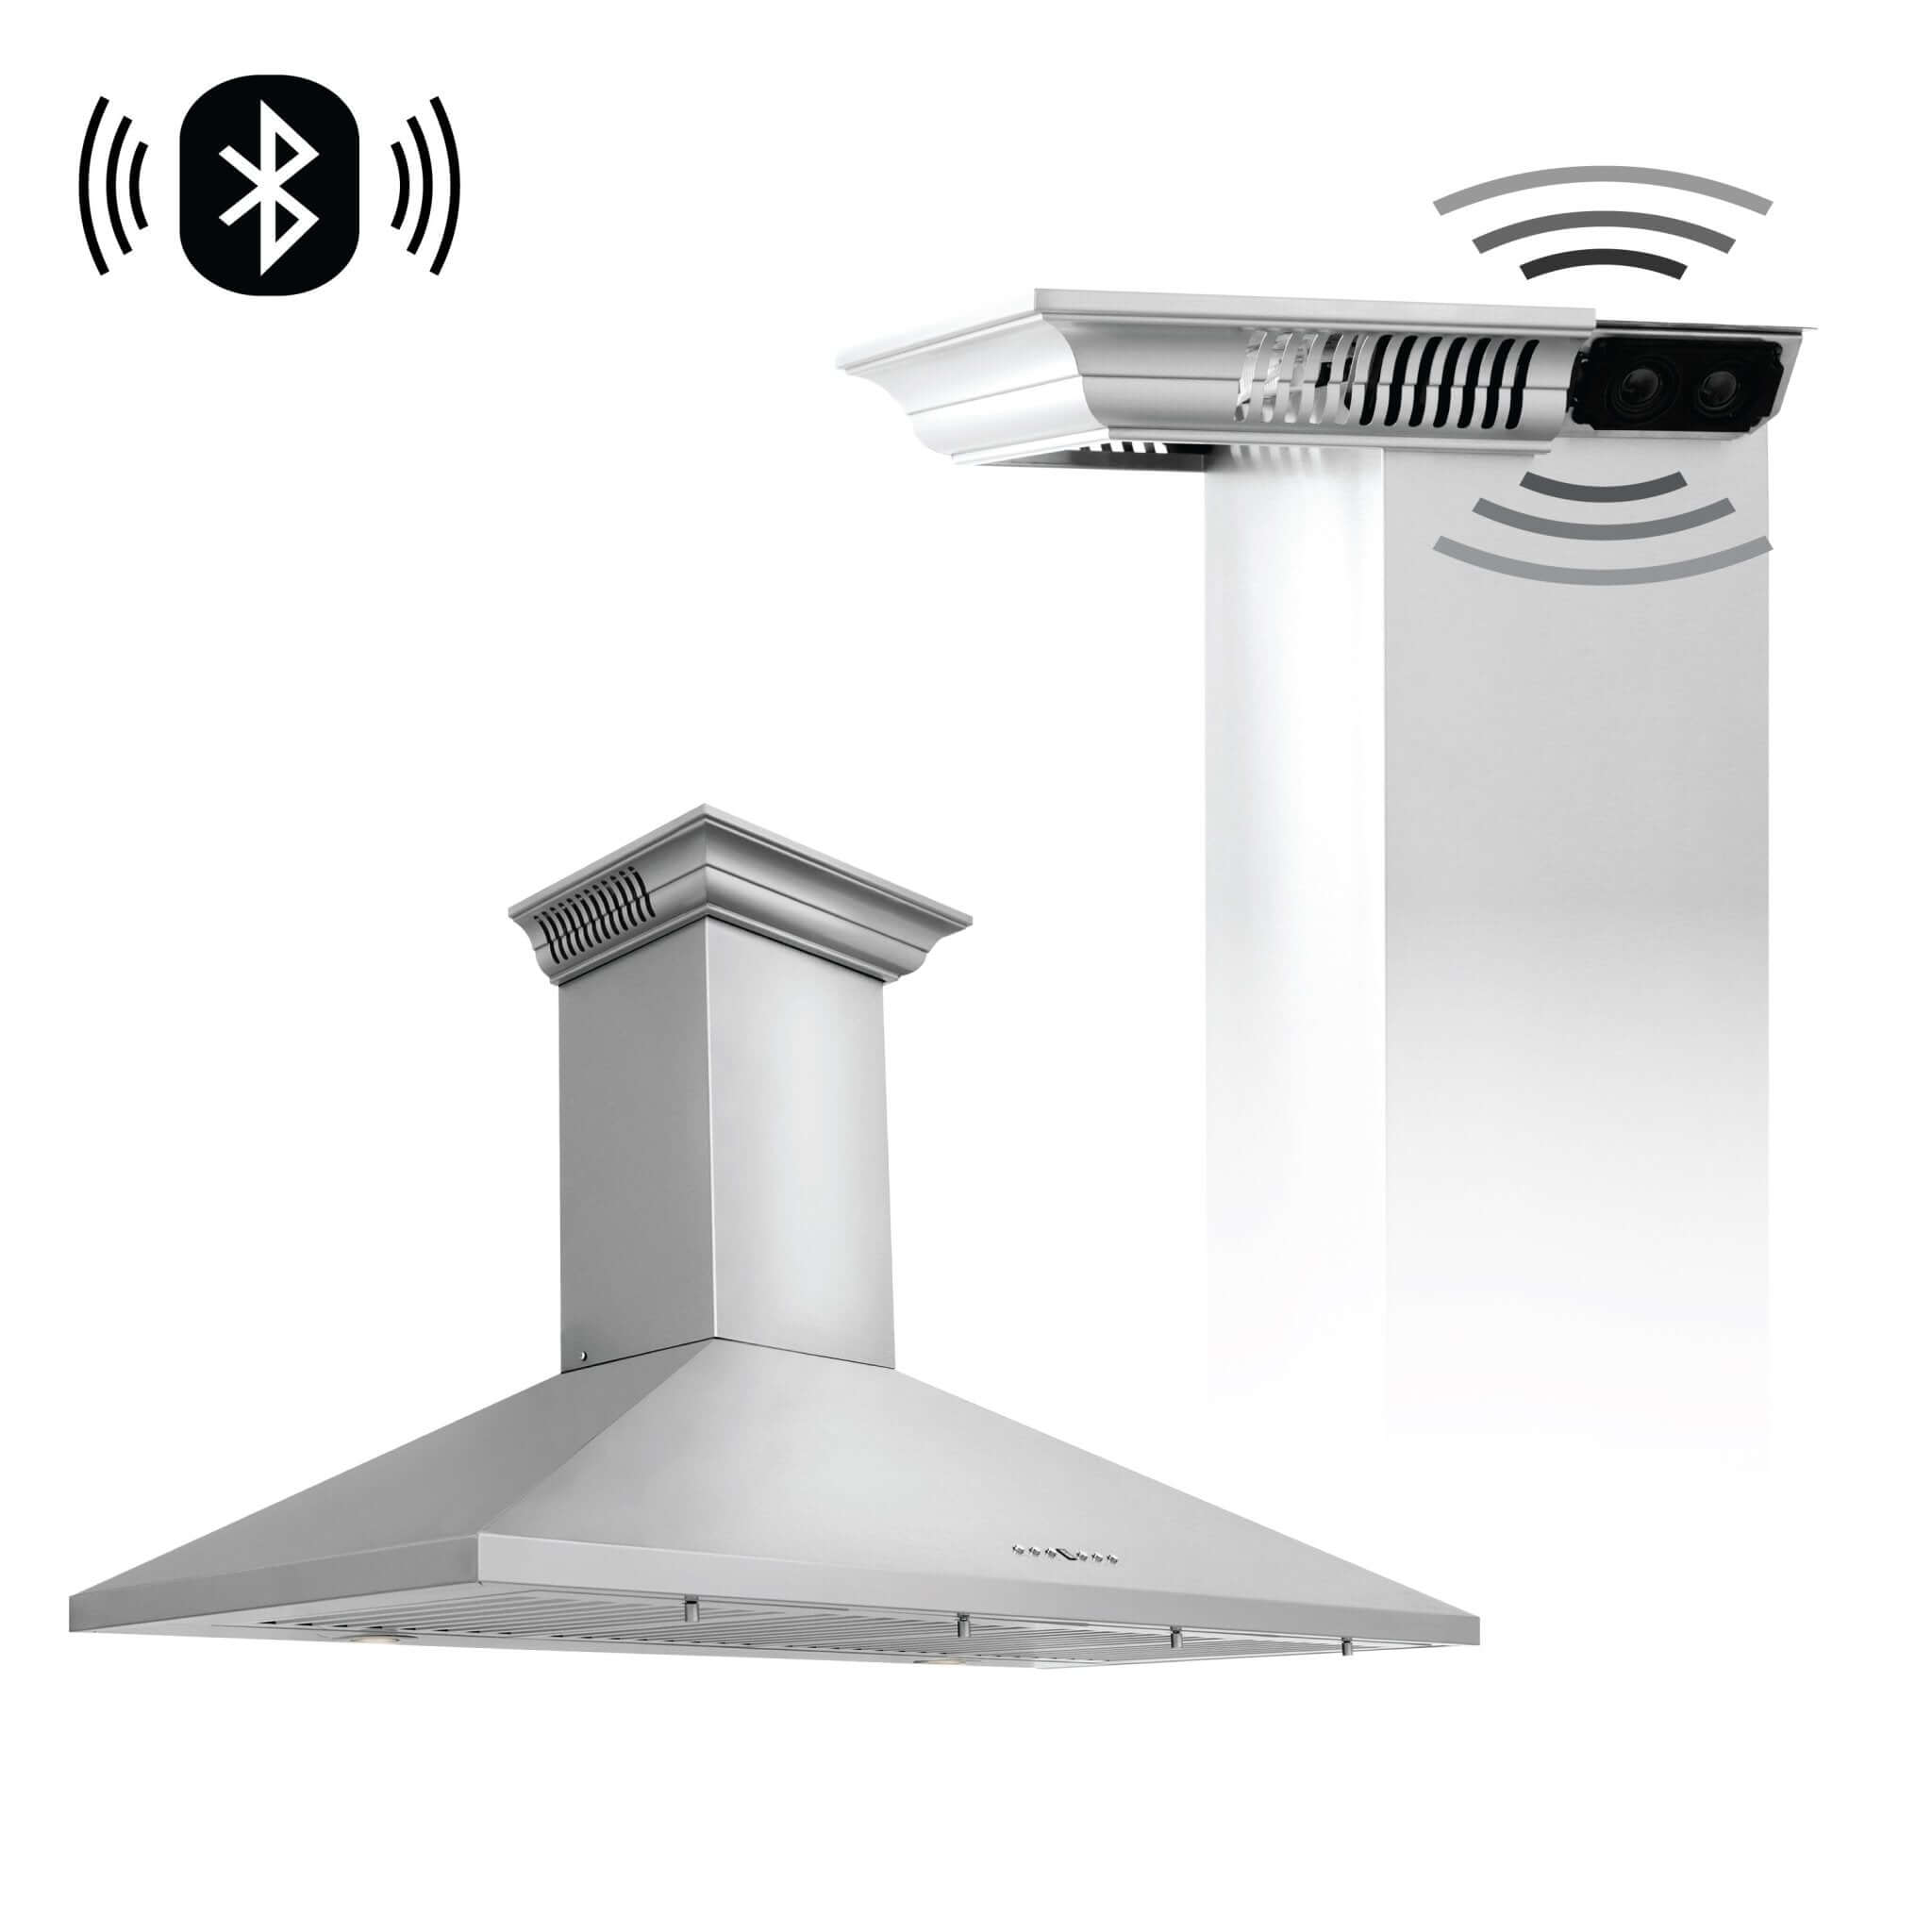 ZLINE Wall Mount Range Hood In Stainless Steel With Built-In CrownSound® Bluetooth Speakers (KL2CRN-BT) - Rustic Kitchen & Bath - ZLINE Kitchen and Bath